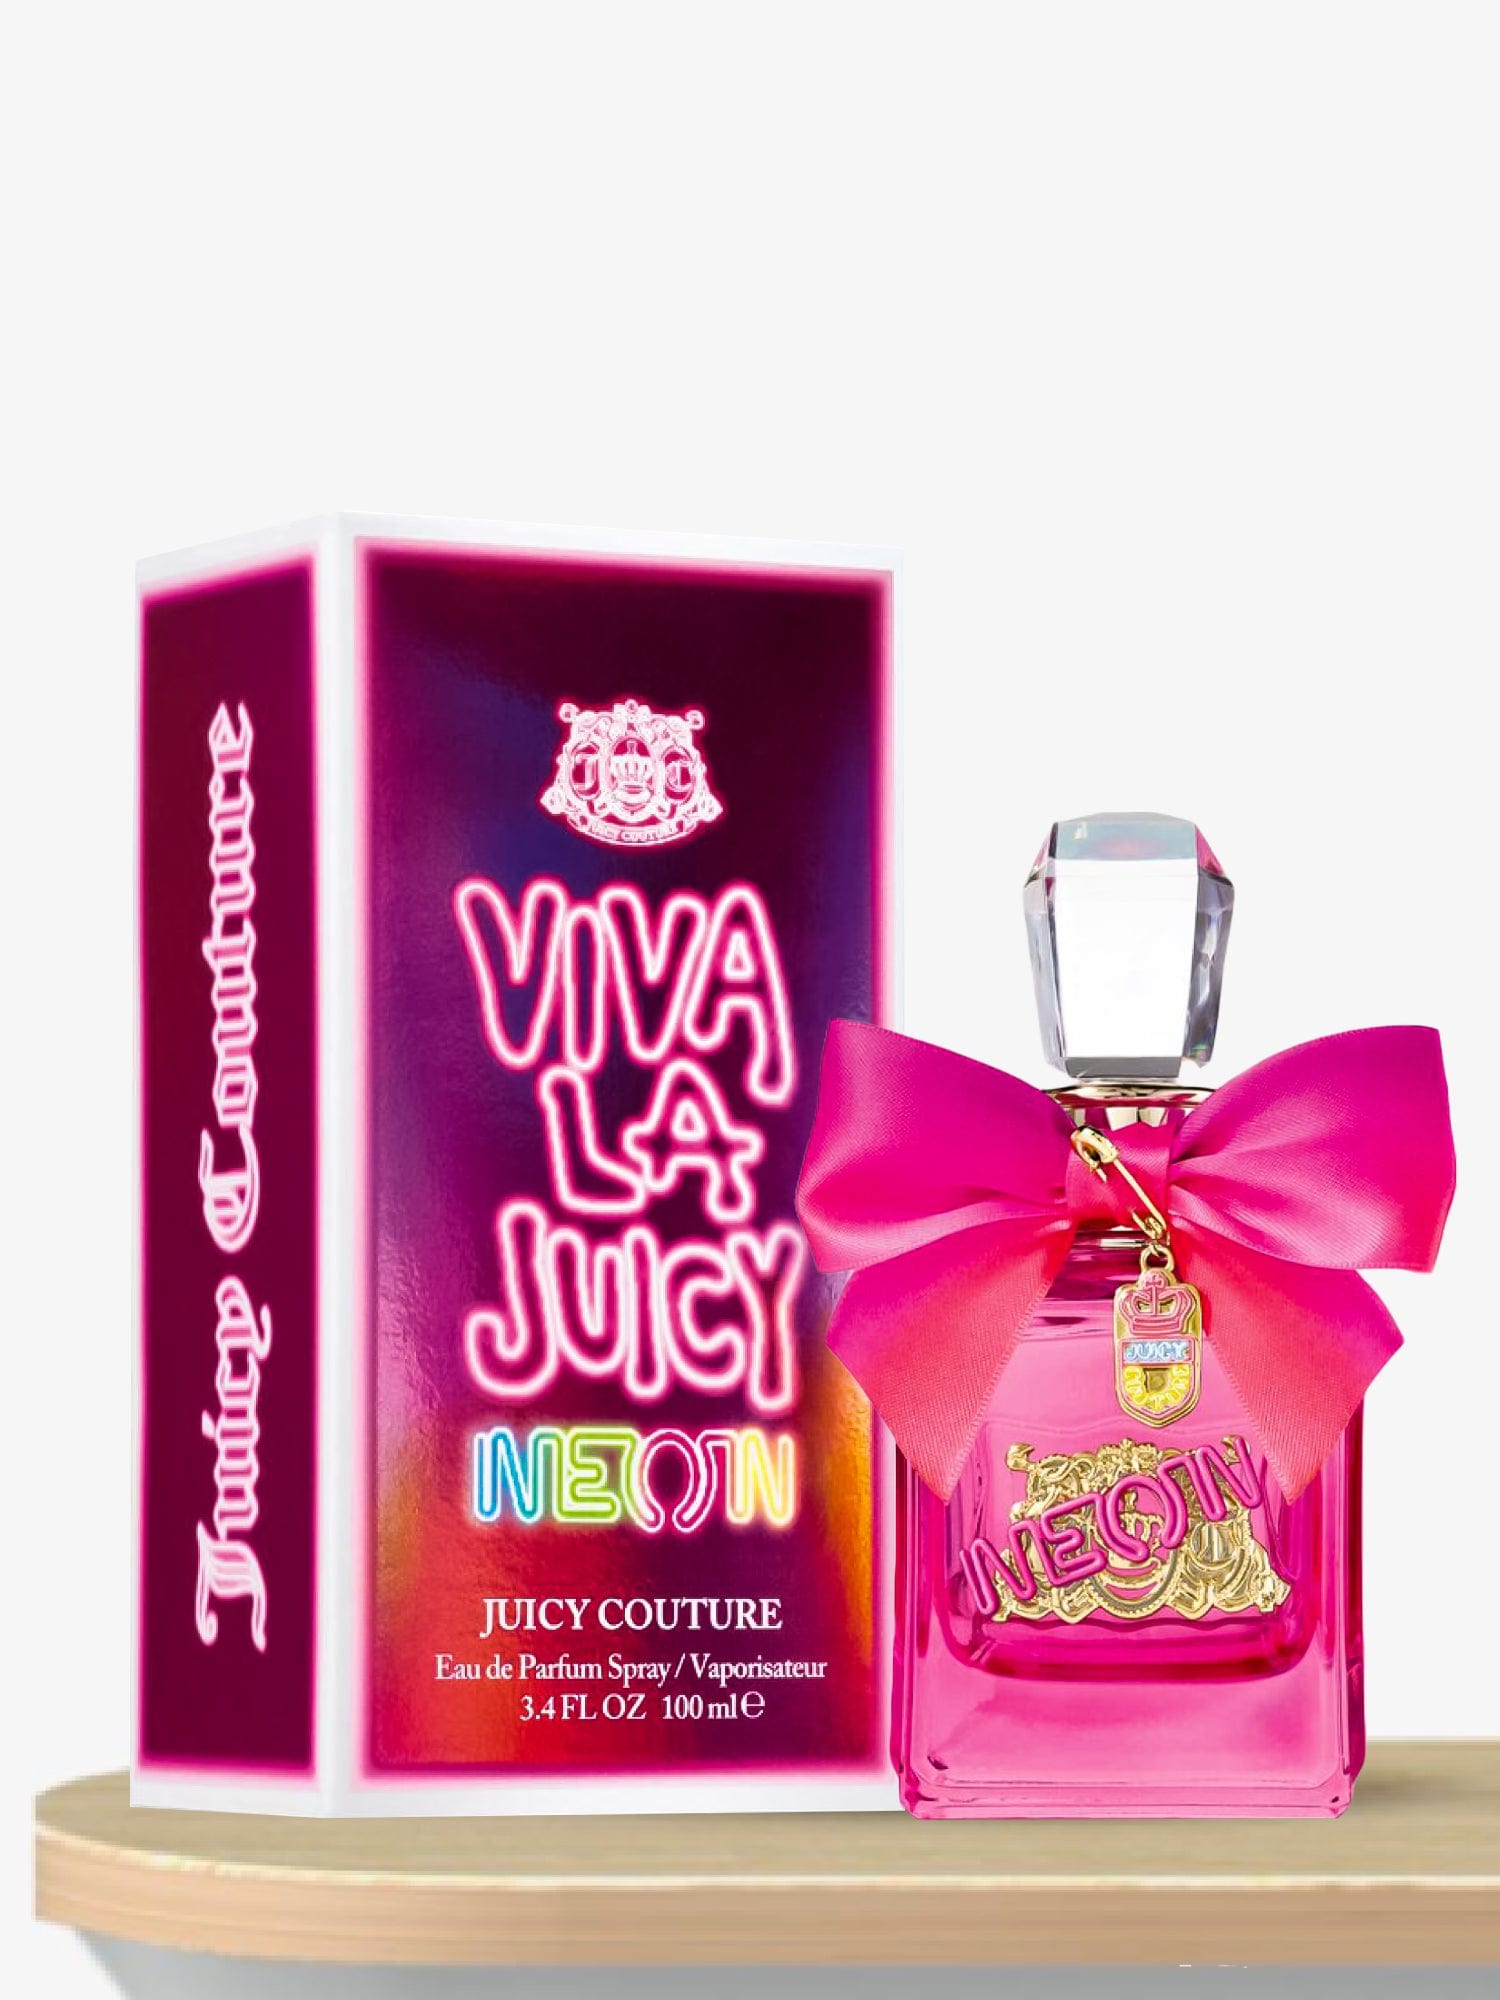 Juicy Couture Viva La Juicy Neon Eau de Parfum